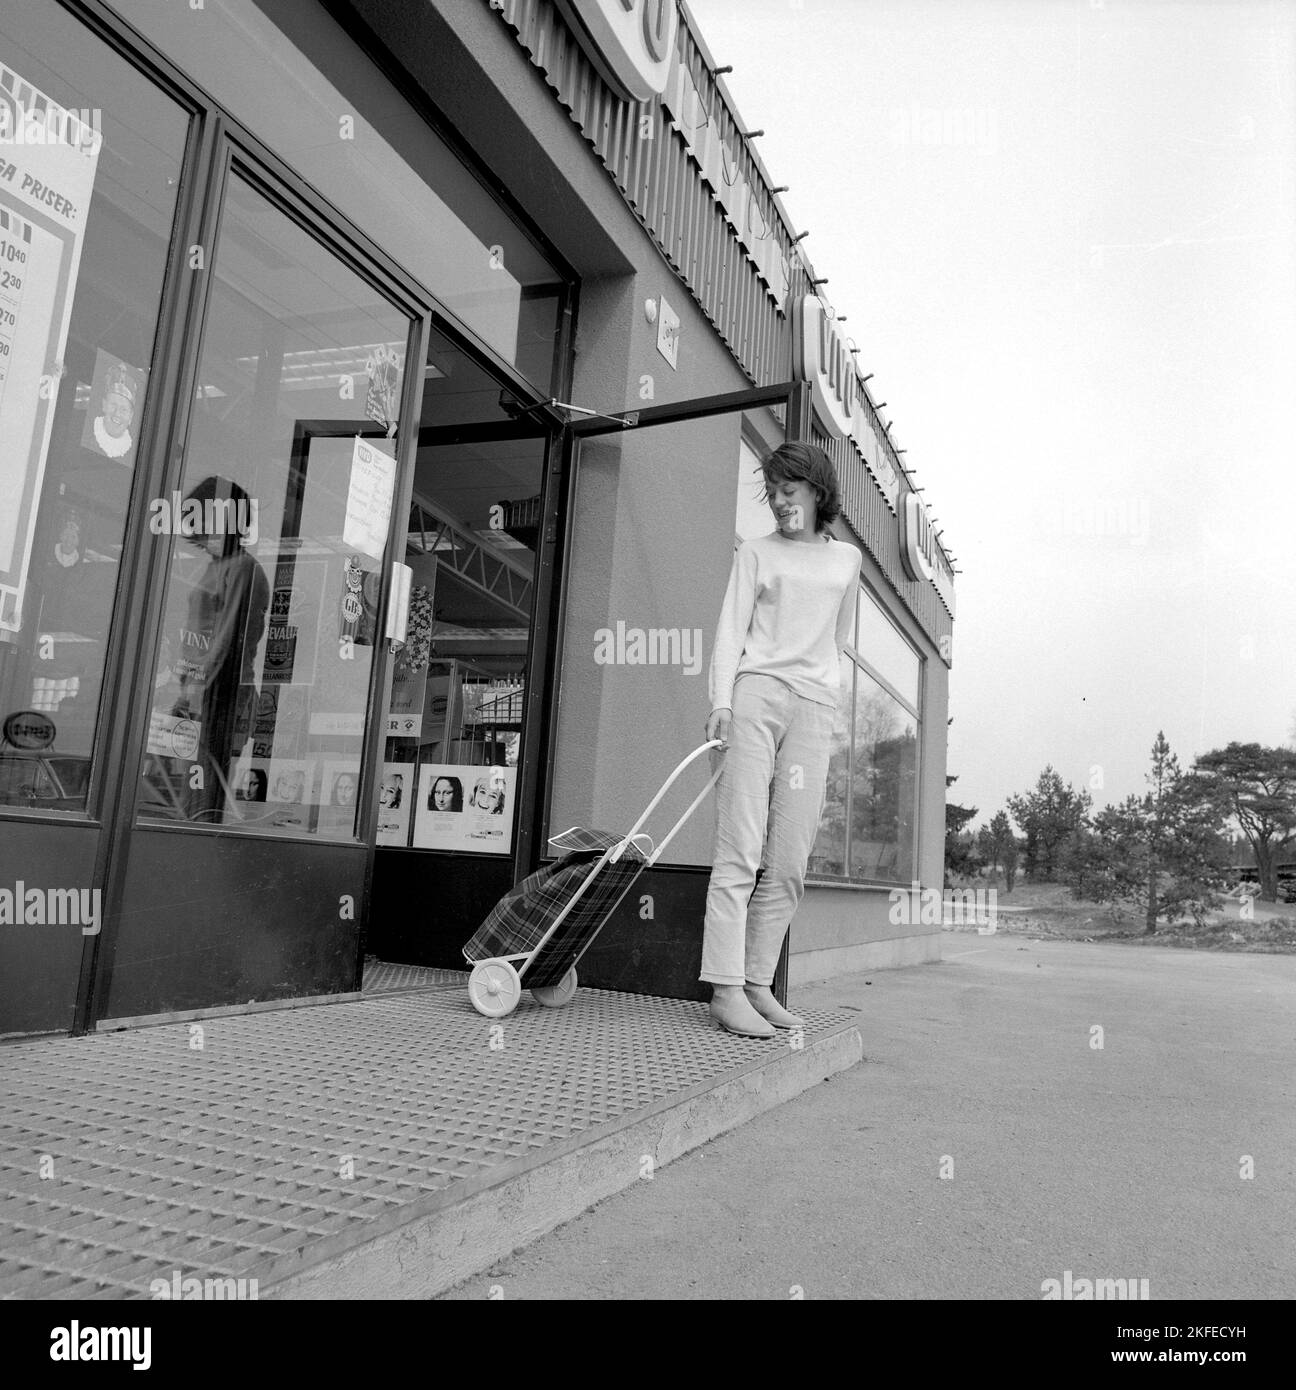 Einkaufen in der 1960s. Eine junge Dame im Supermarkt, in dem sie ihren Einkaufswagen benutzt, um ihre Lebensmittel zu transportieren. Ein Neuheitsartikel, der ursprünglich aus den USA kam. Schweden april 14 1966 Conard Ref. 5236 Stockfoto